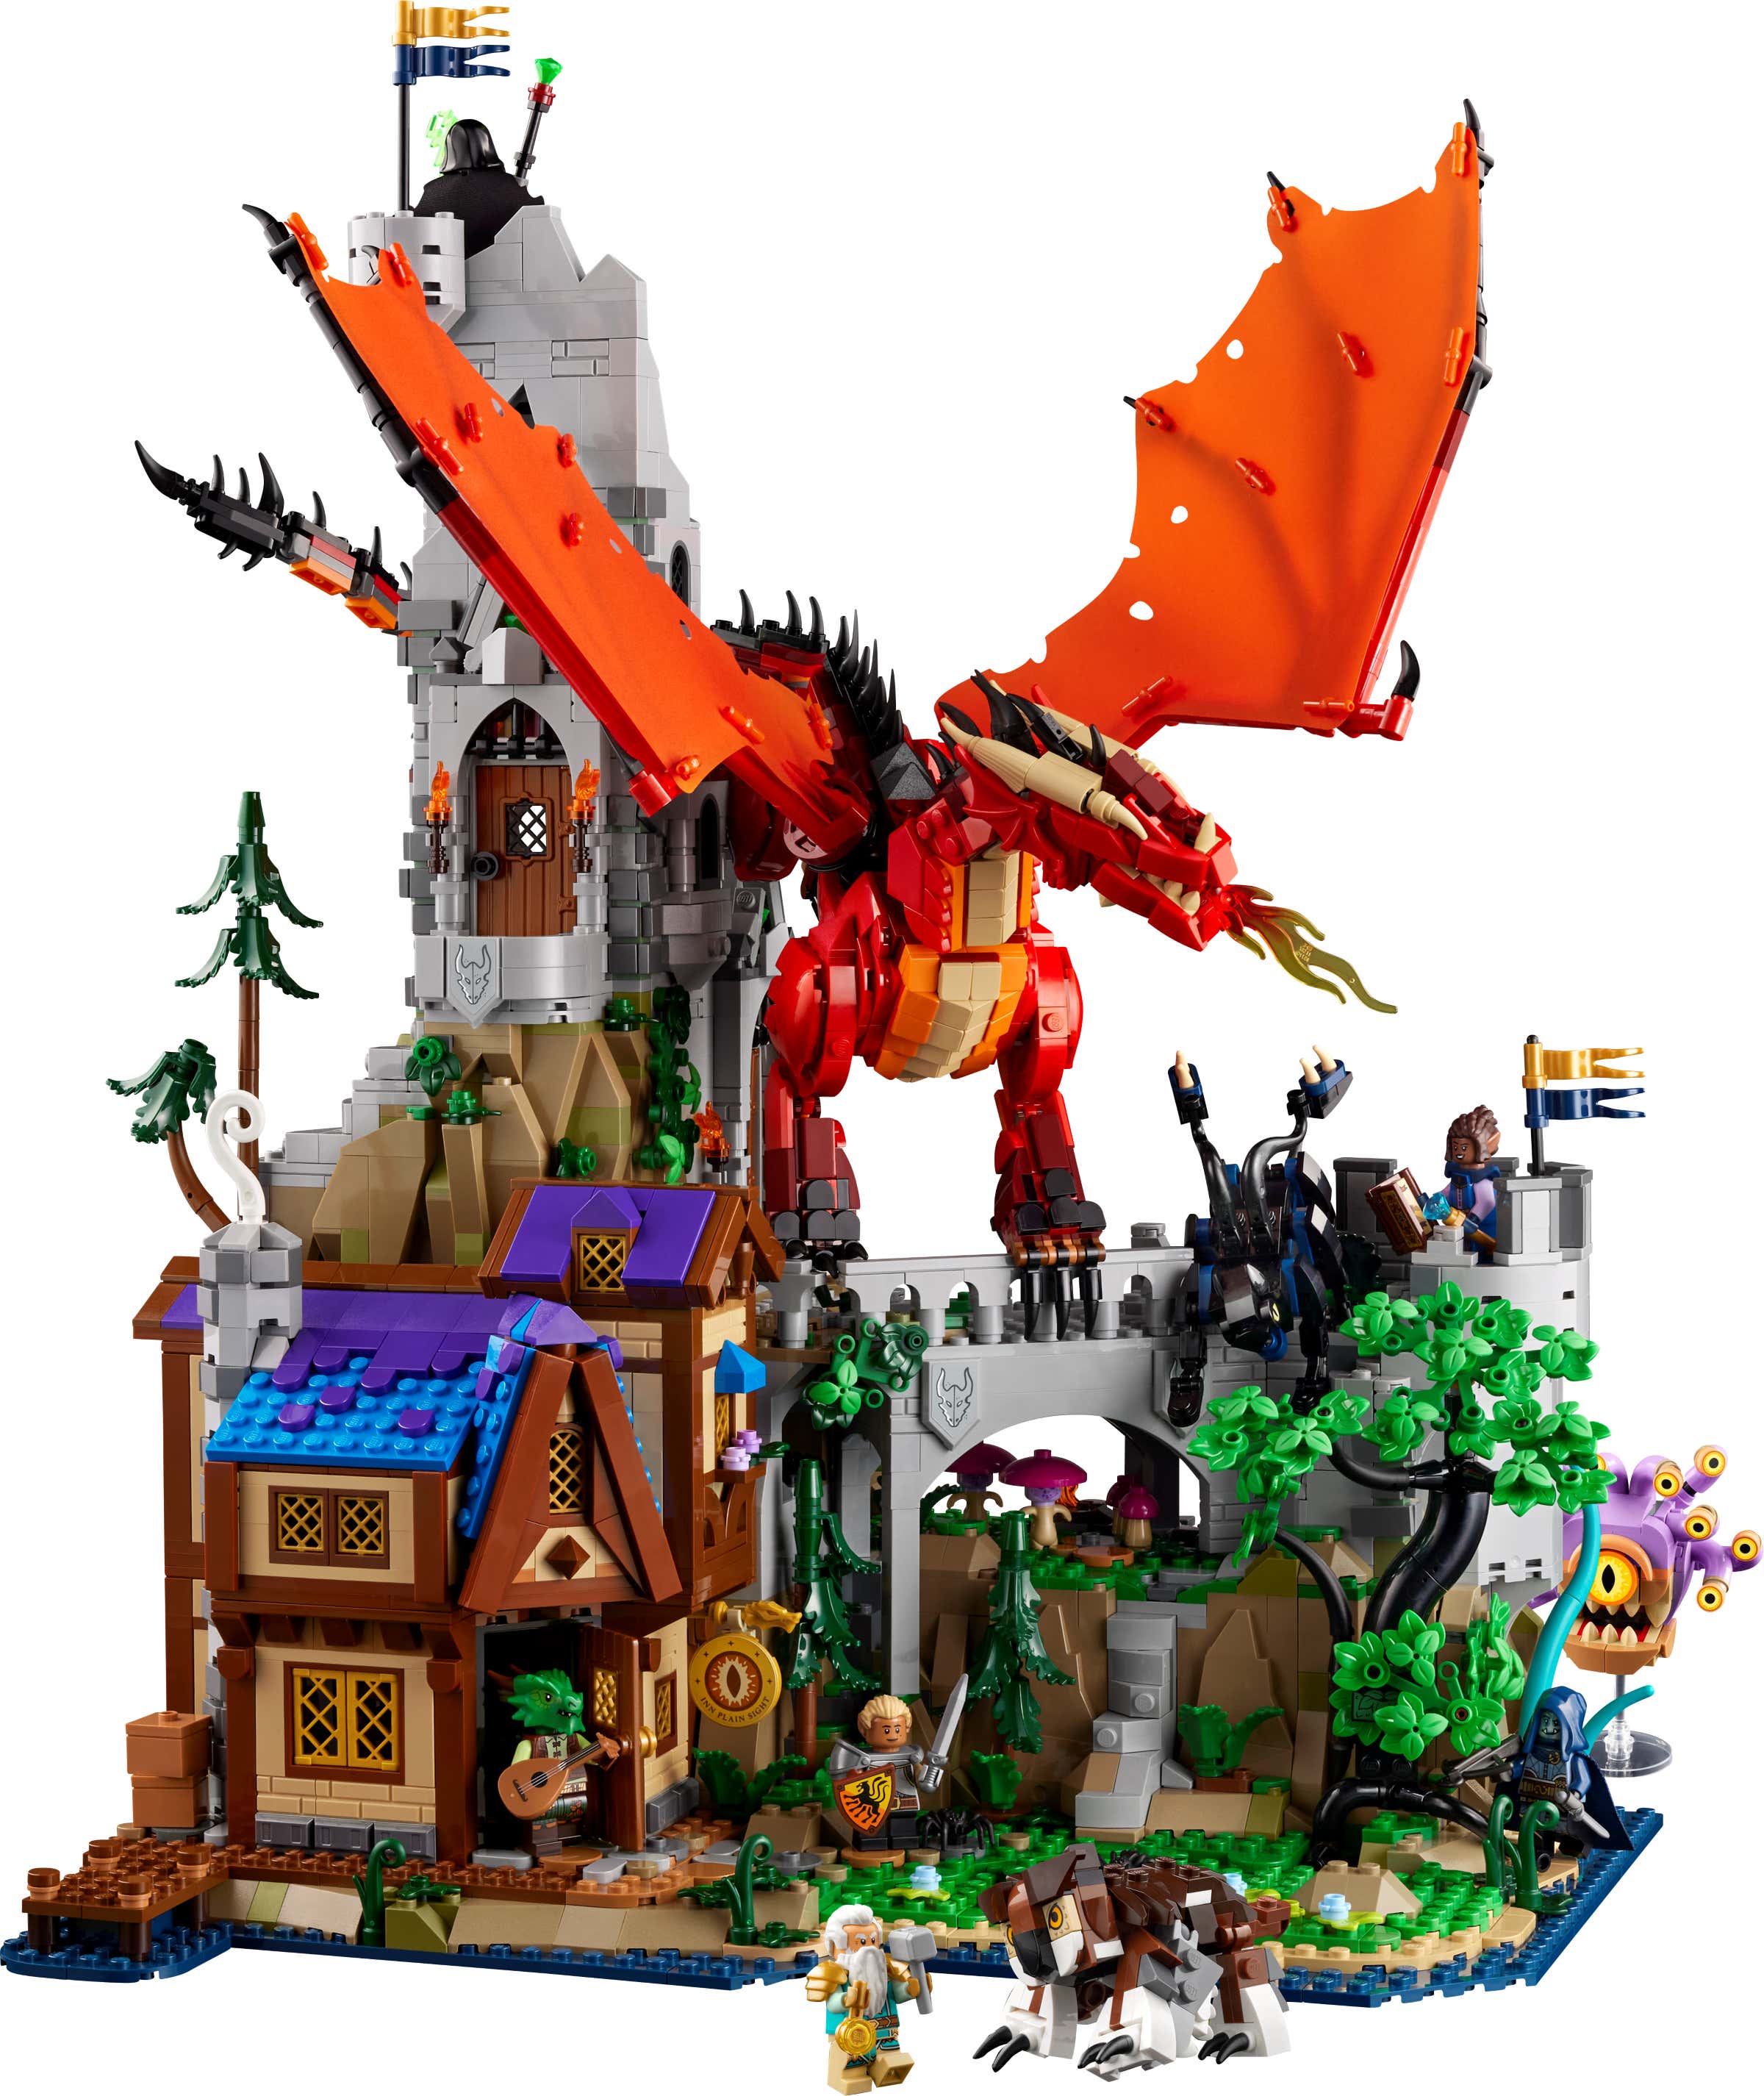 Lego'nun Girişim için Nisan Sürümü Rulosu başlıklı makale için resim